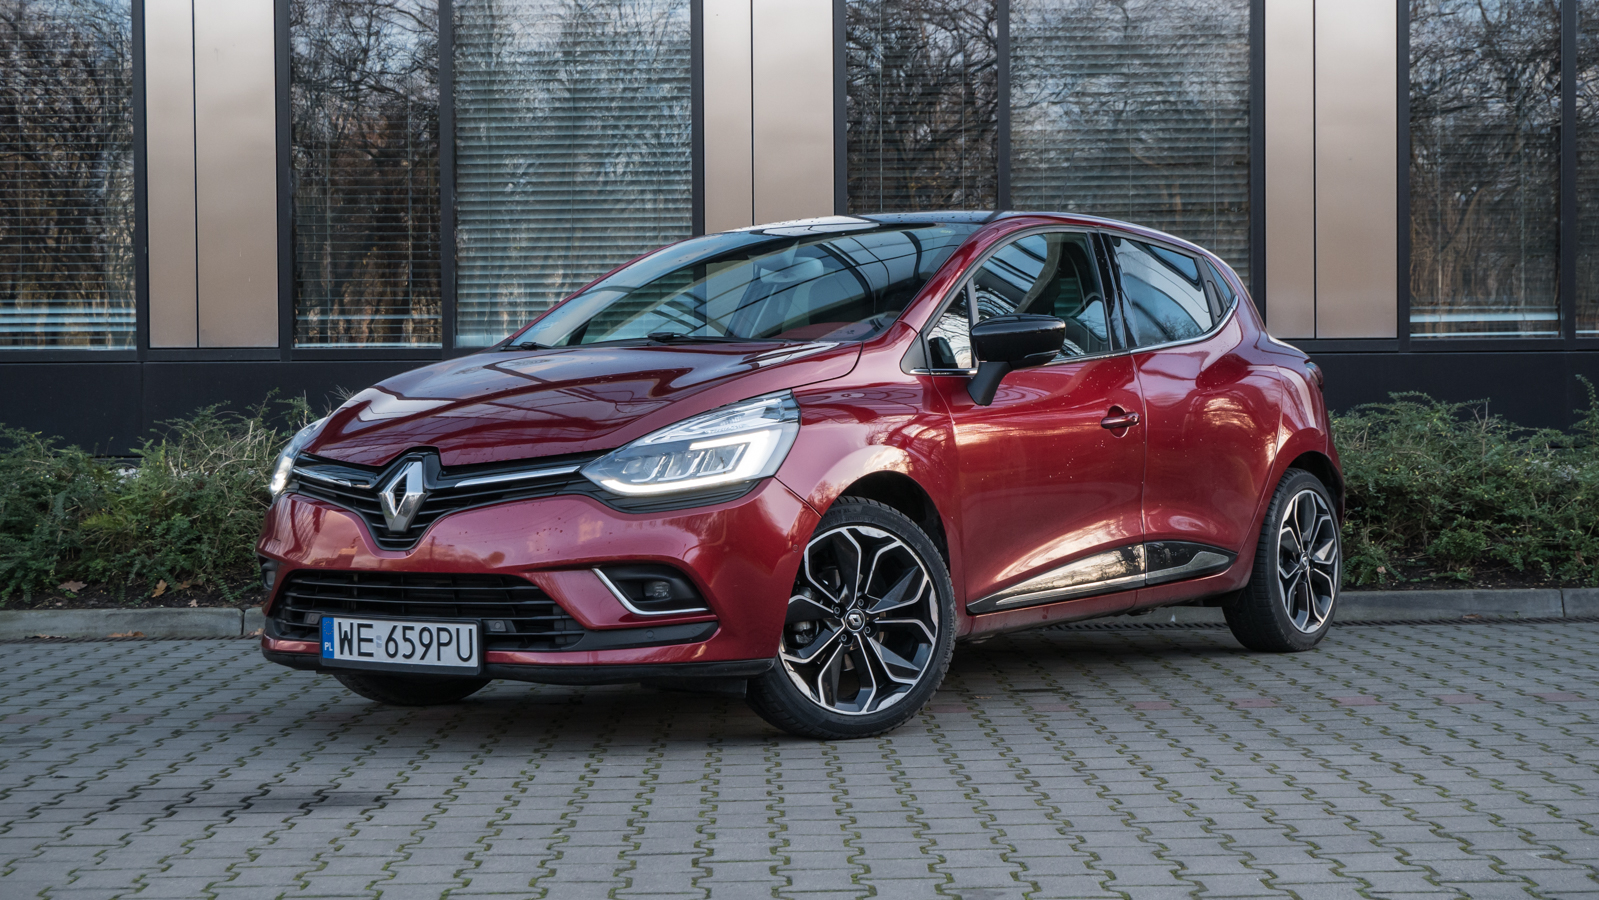 Akcja serwisowa Renault kilka tysięcy egzemplarzy Clio